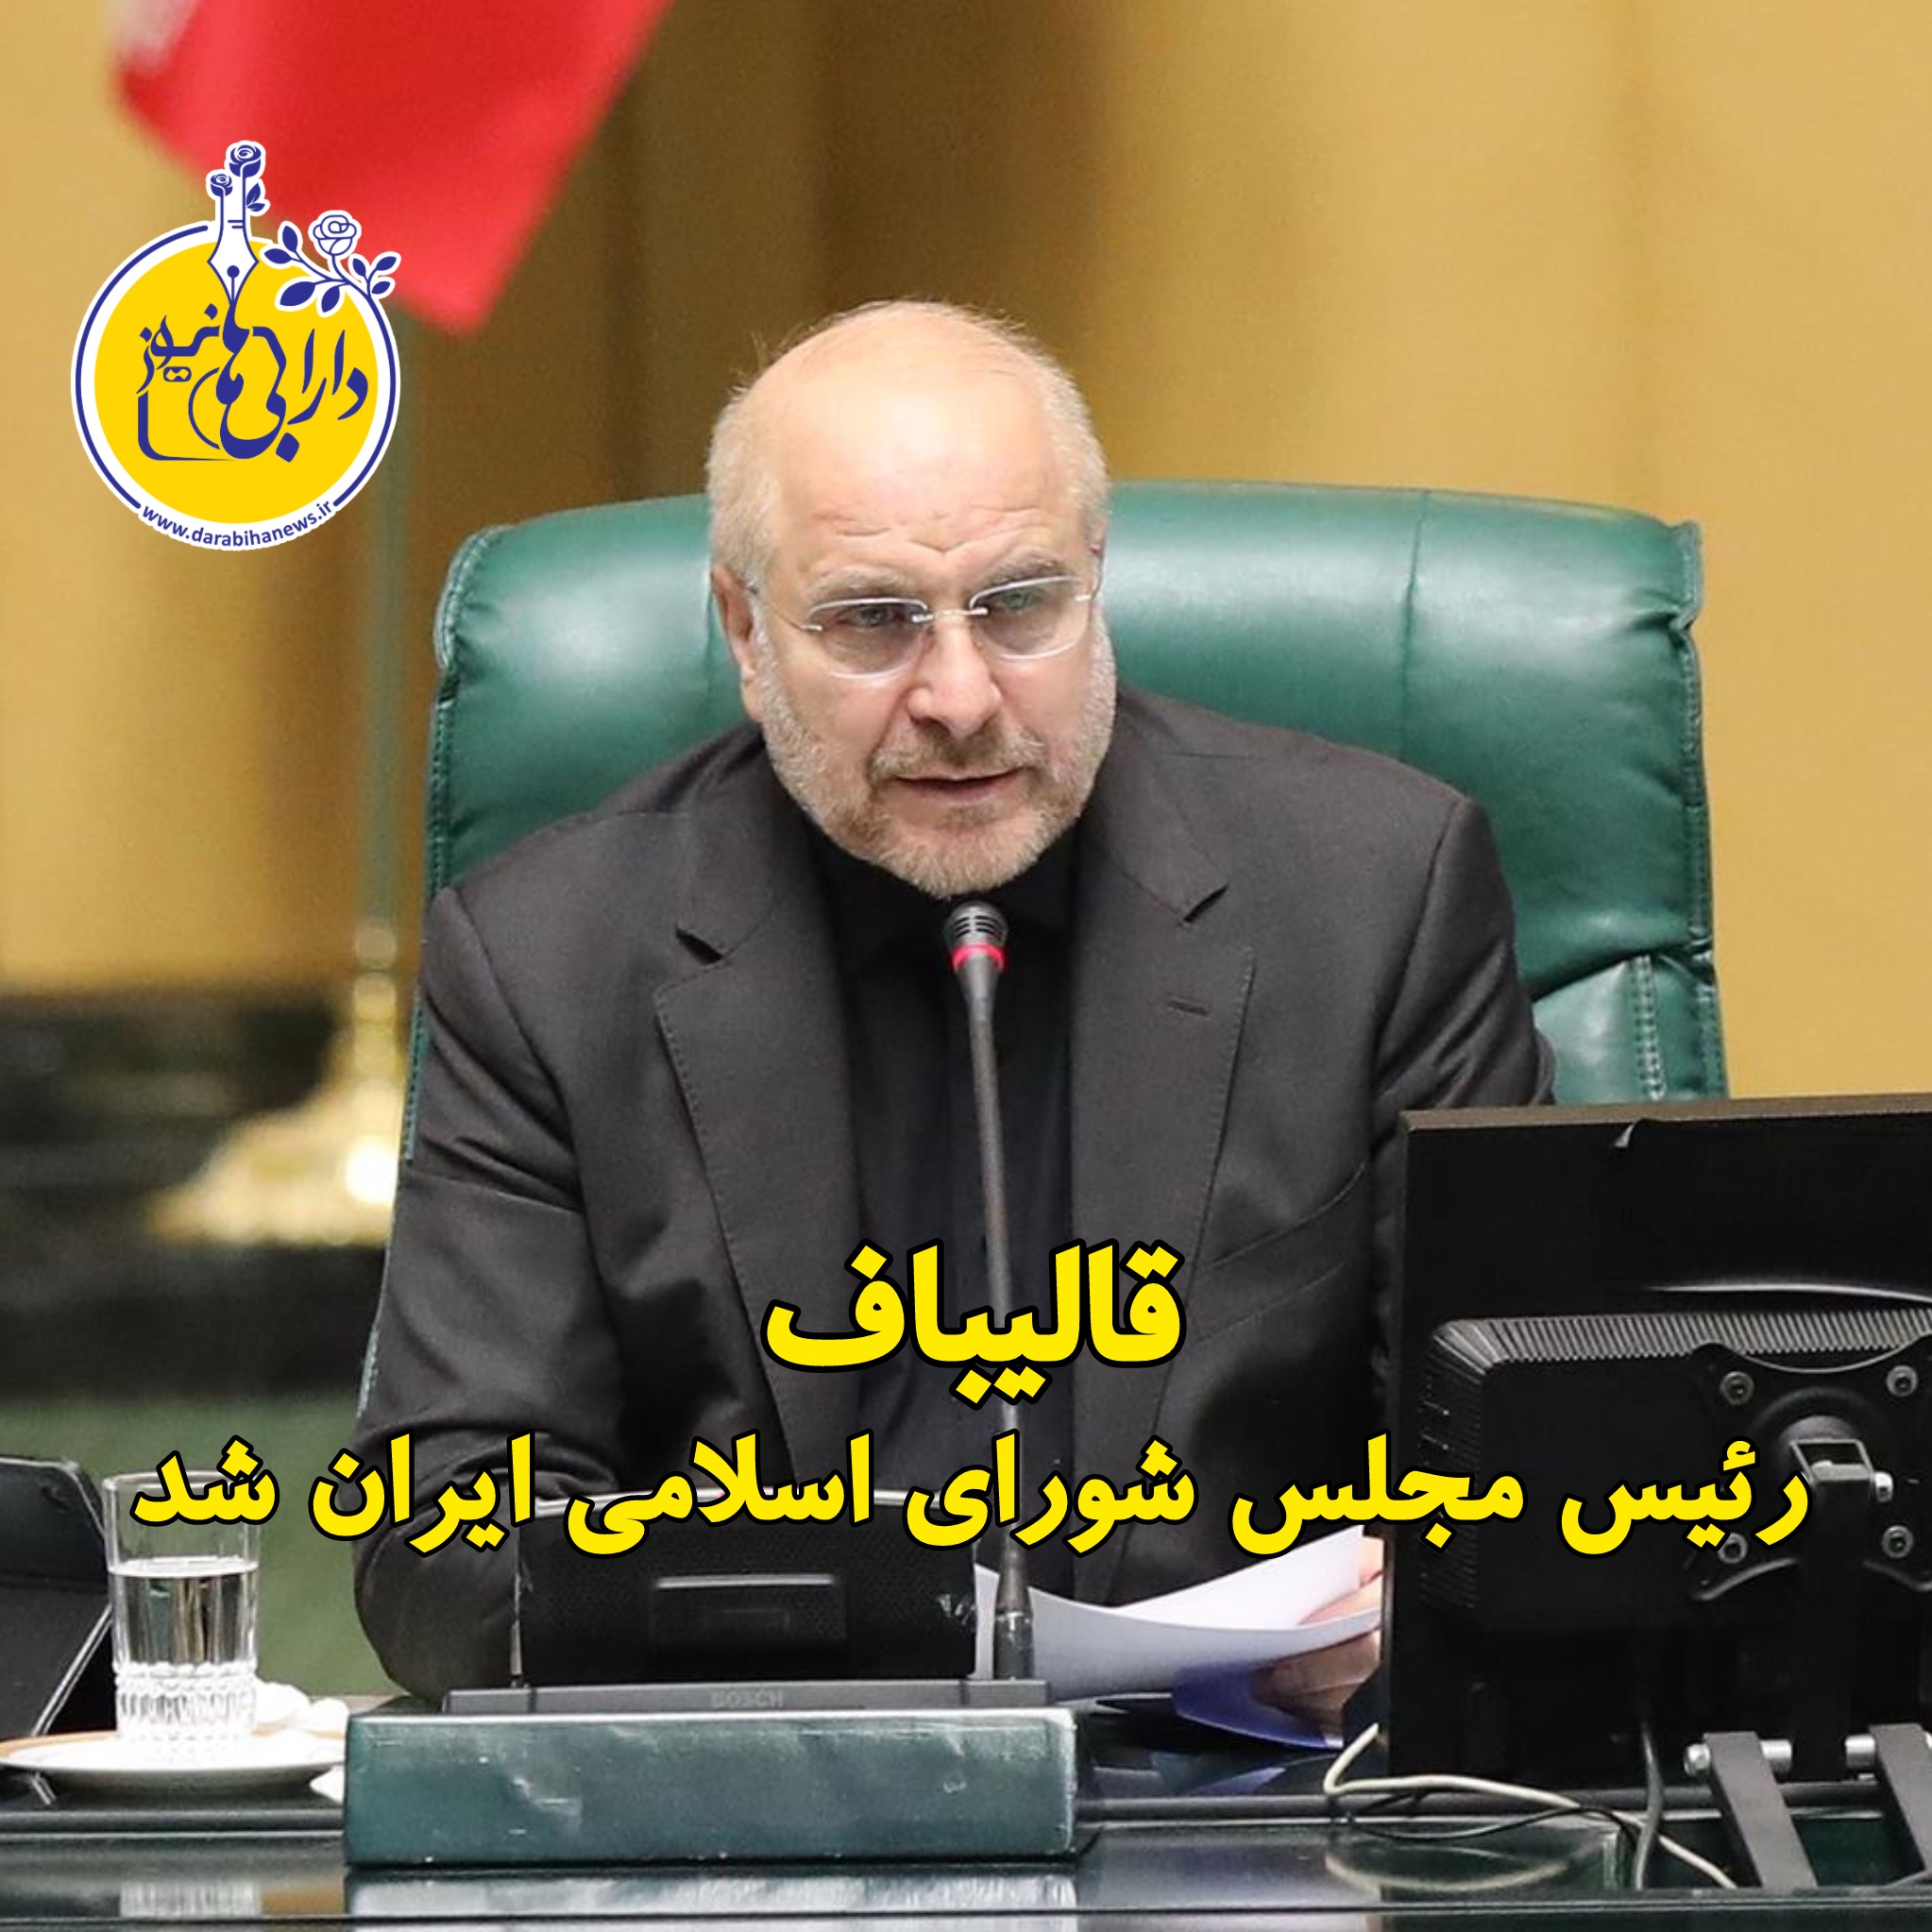 قالیباف رئیس مجلس شورای اسلامی ایران شد